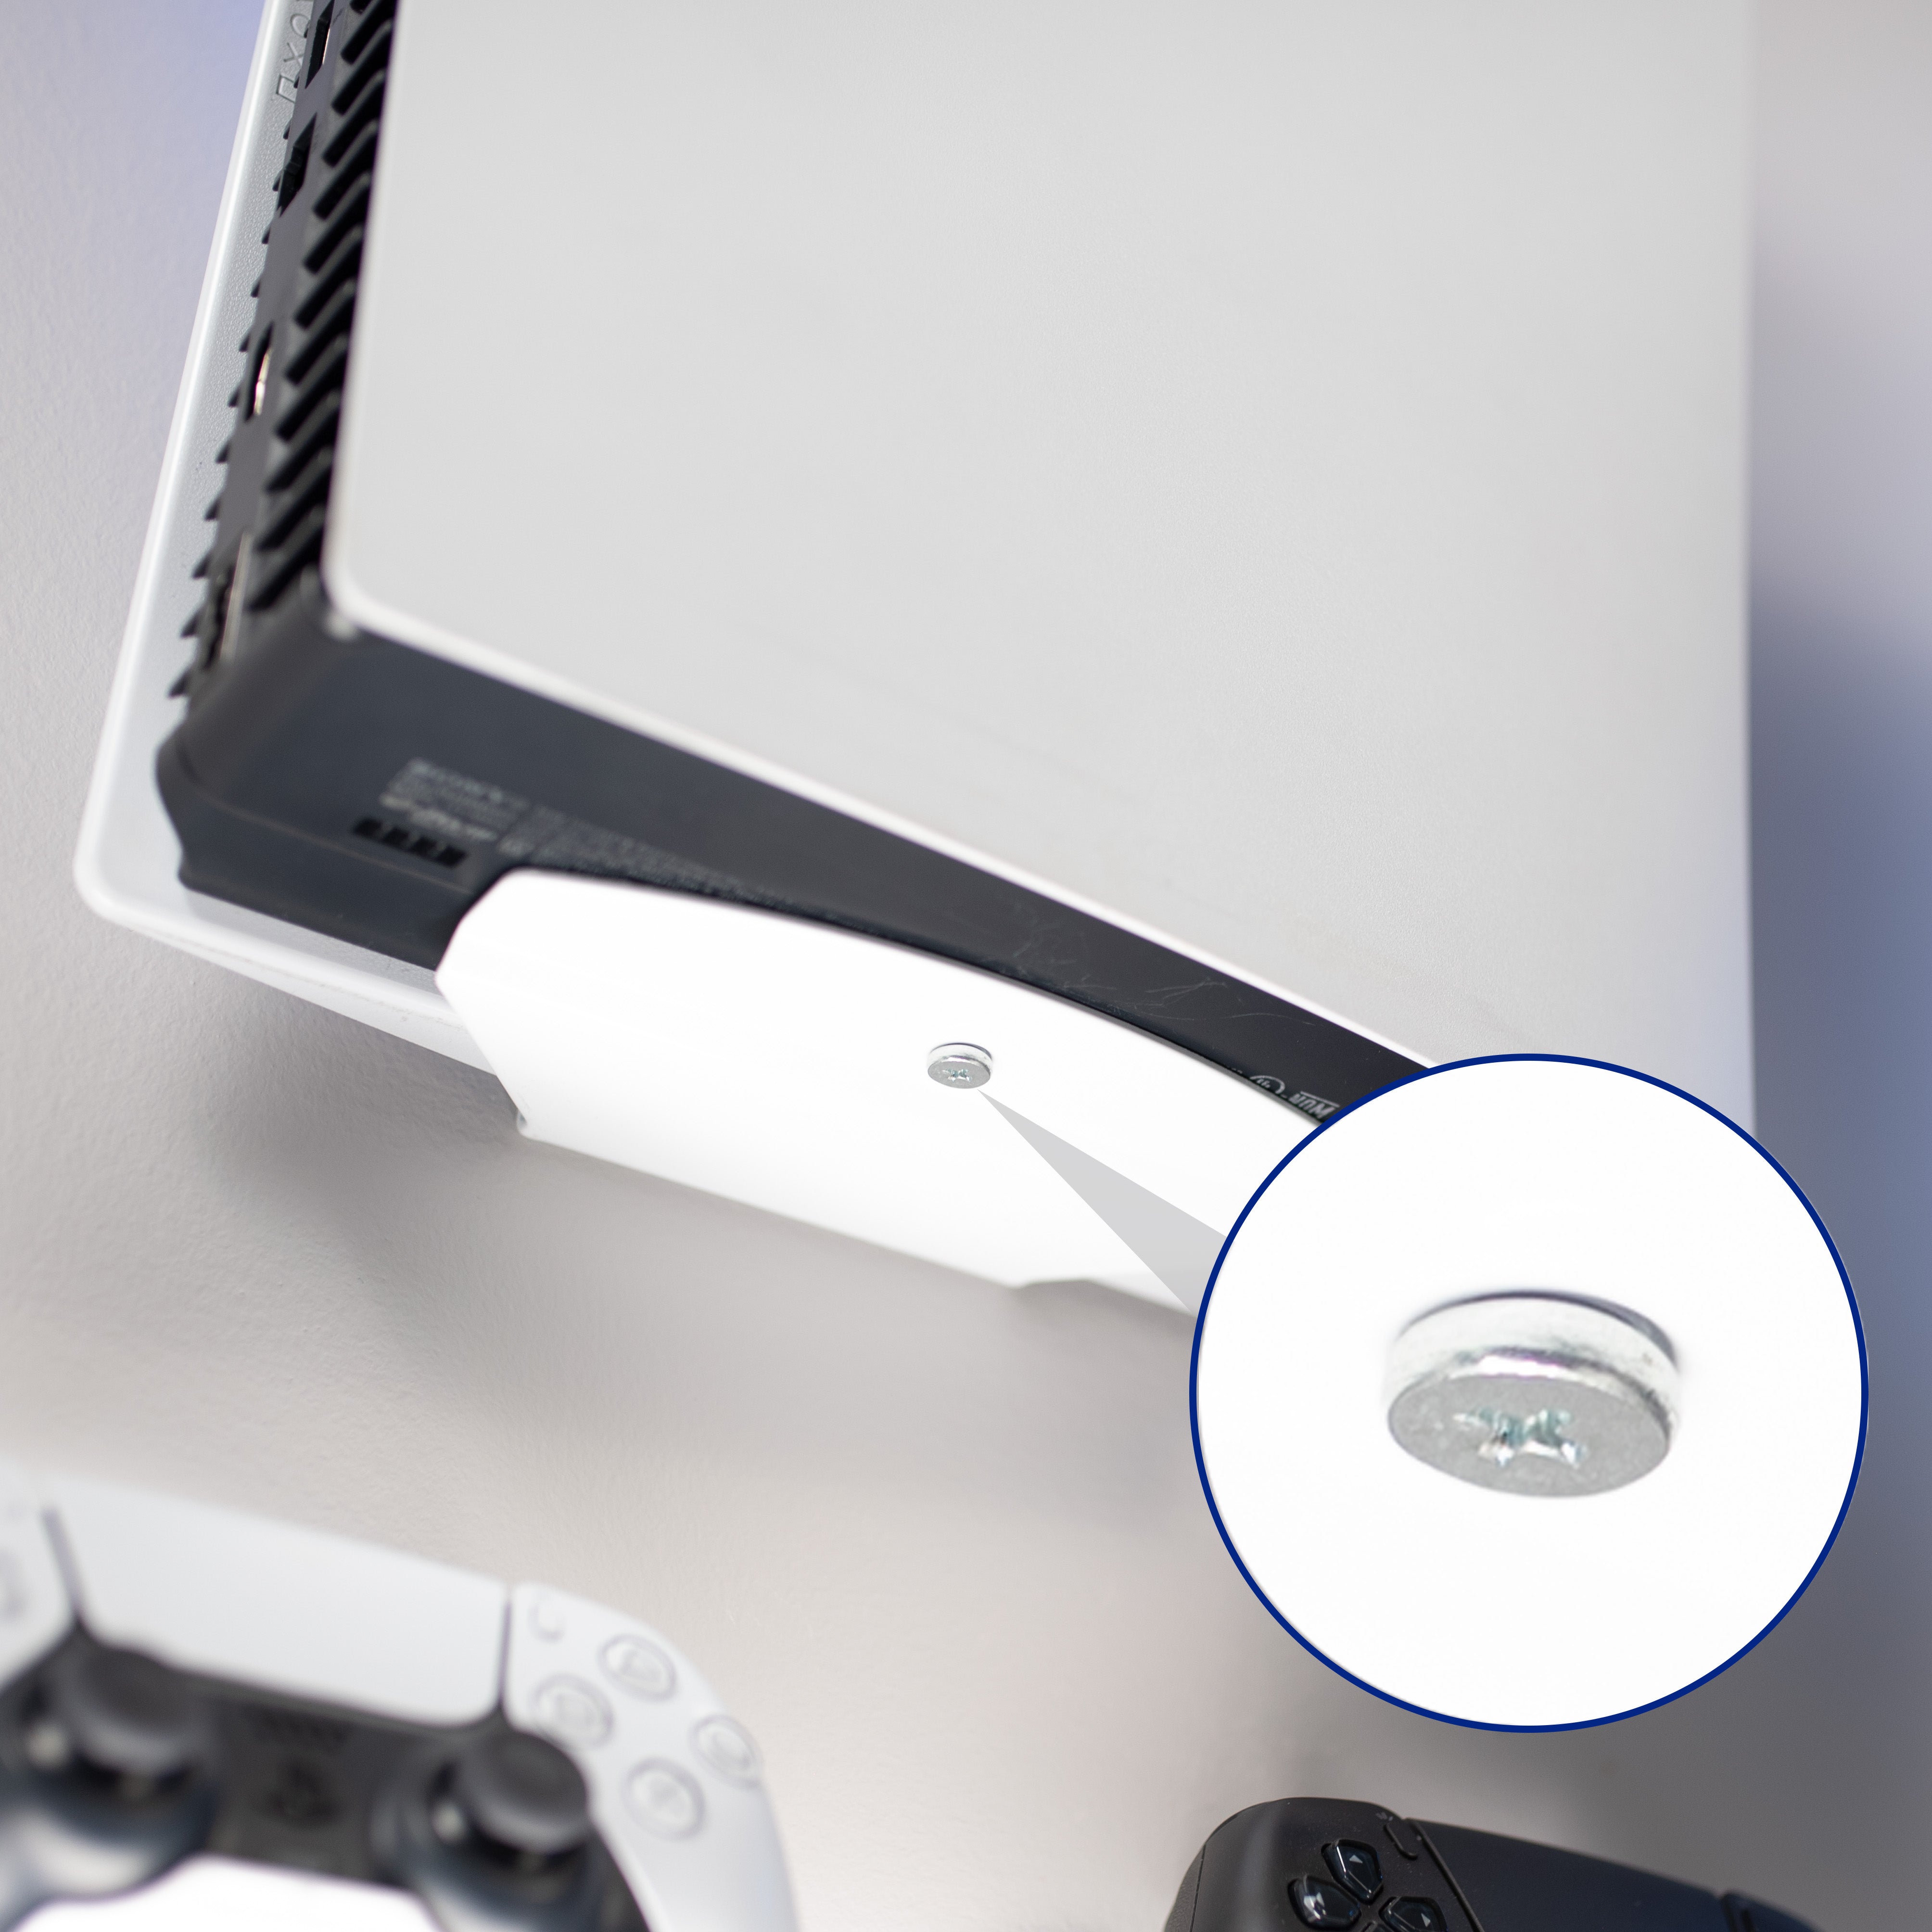 Soporte de pared PS5 para PlayStation 5